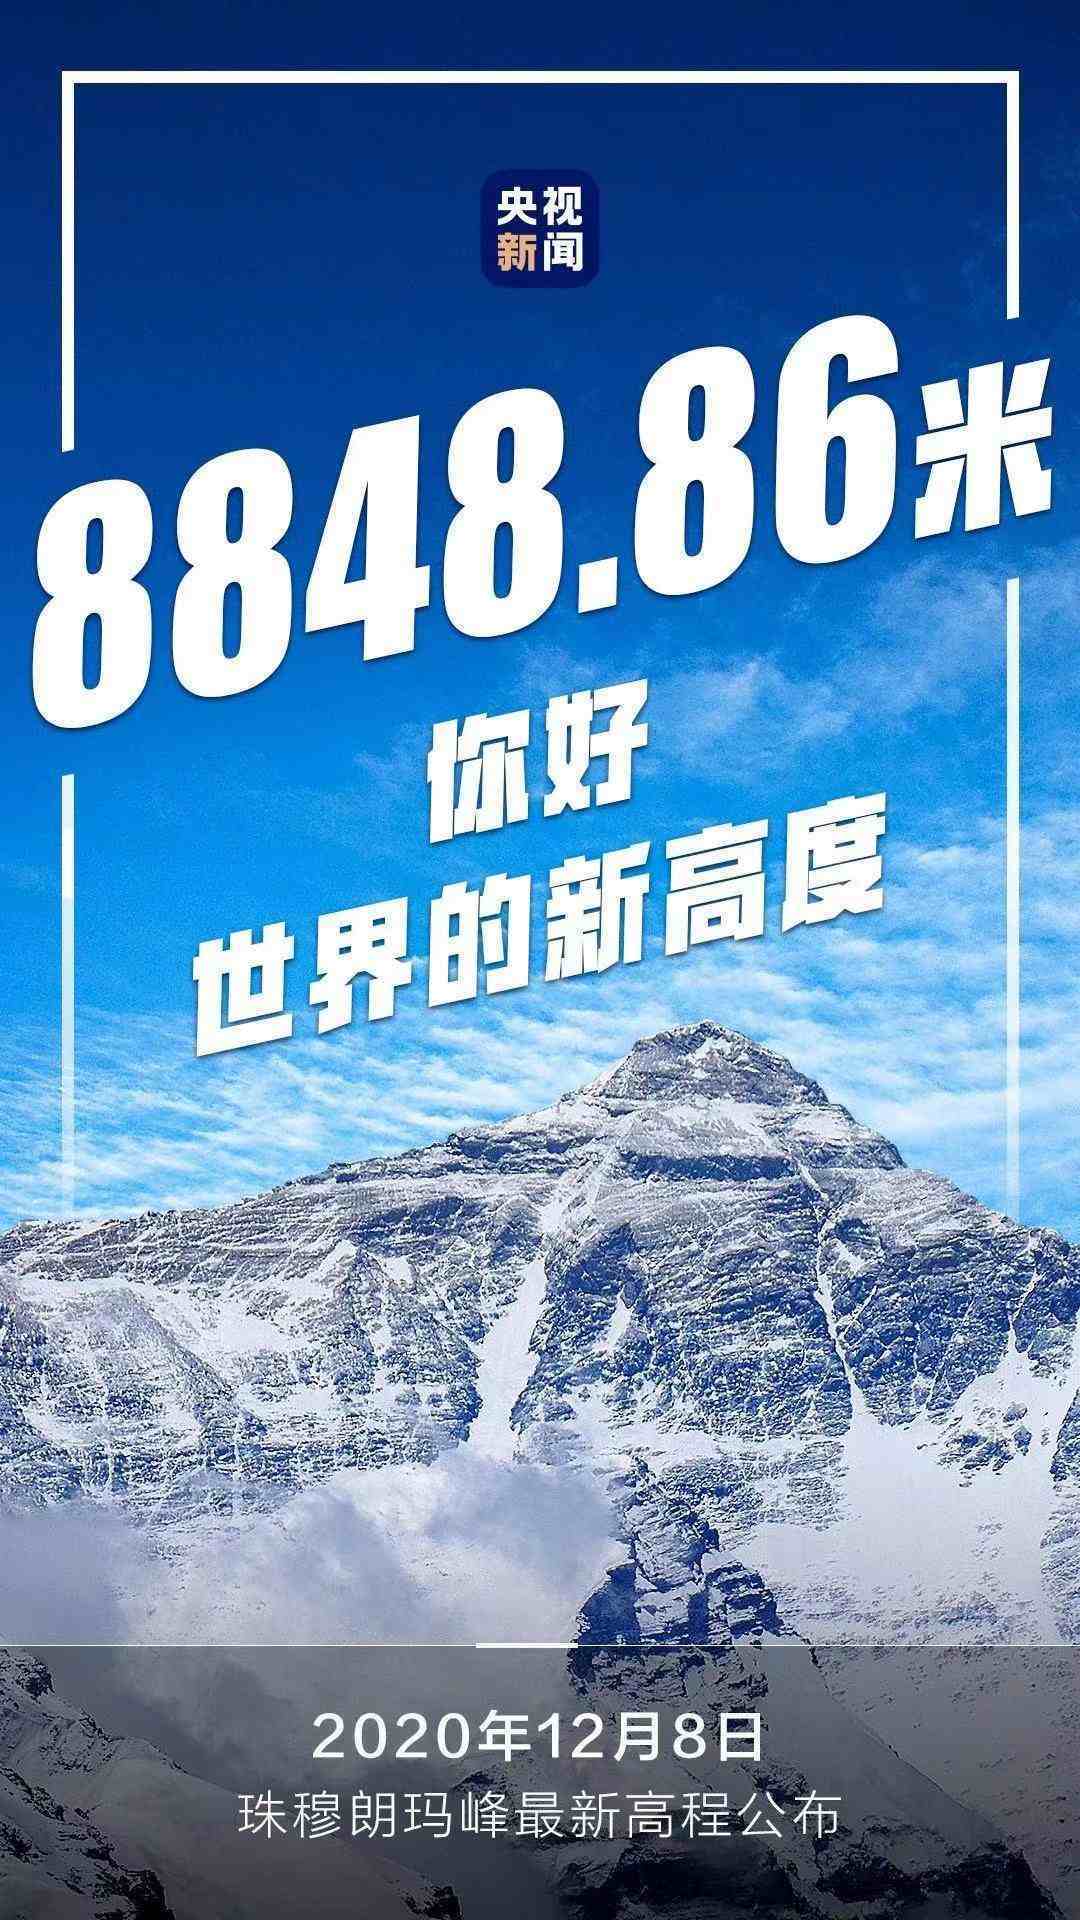 长高了！珠穆朗玛峰新高度8848.86米，45年长高73厘米